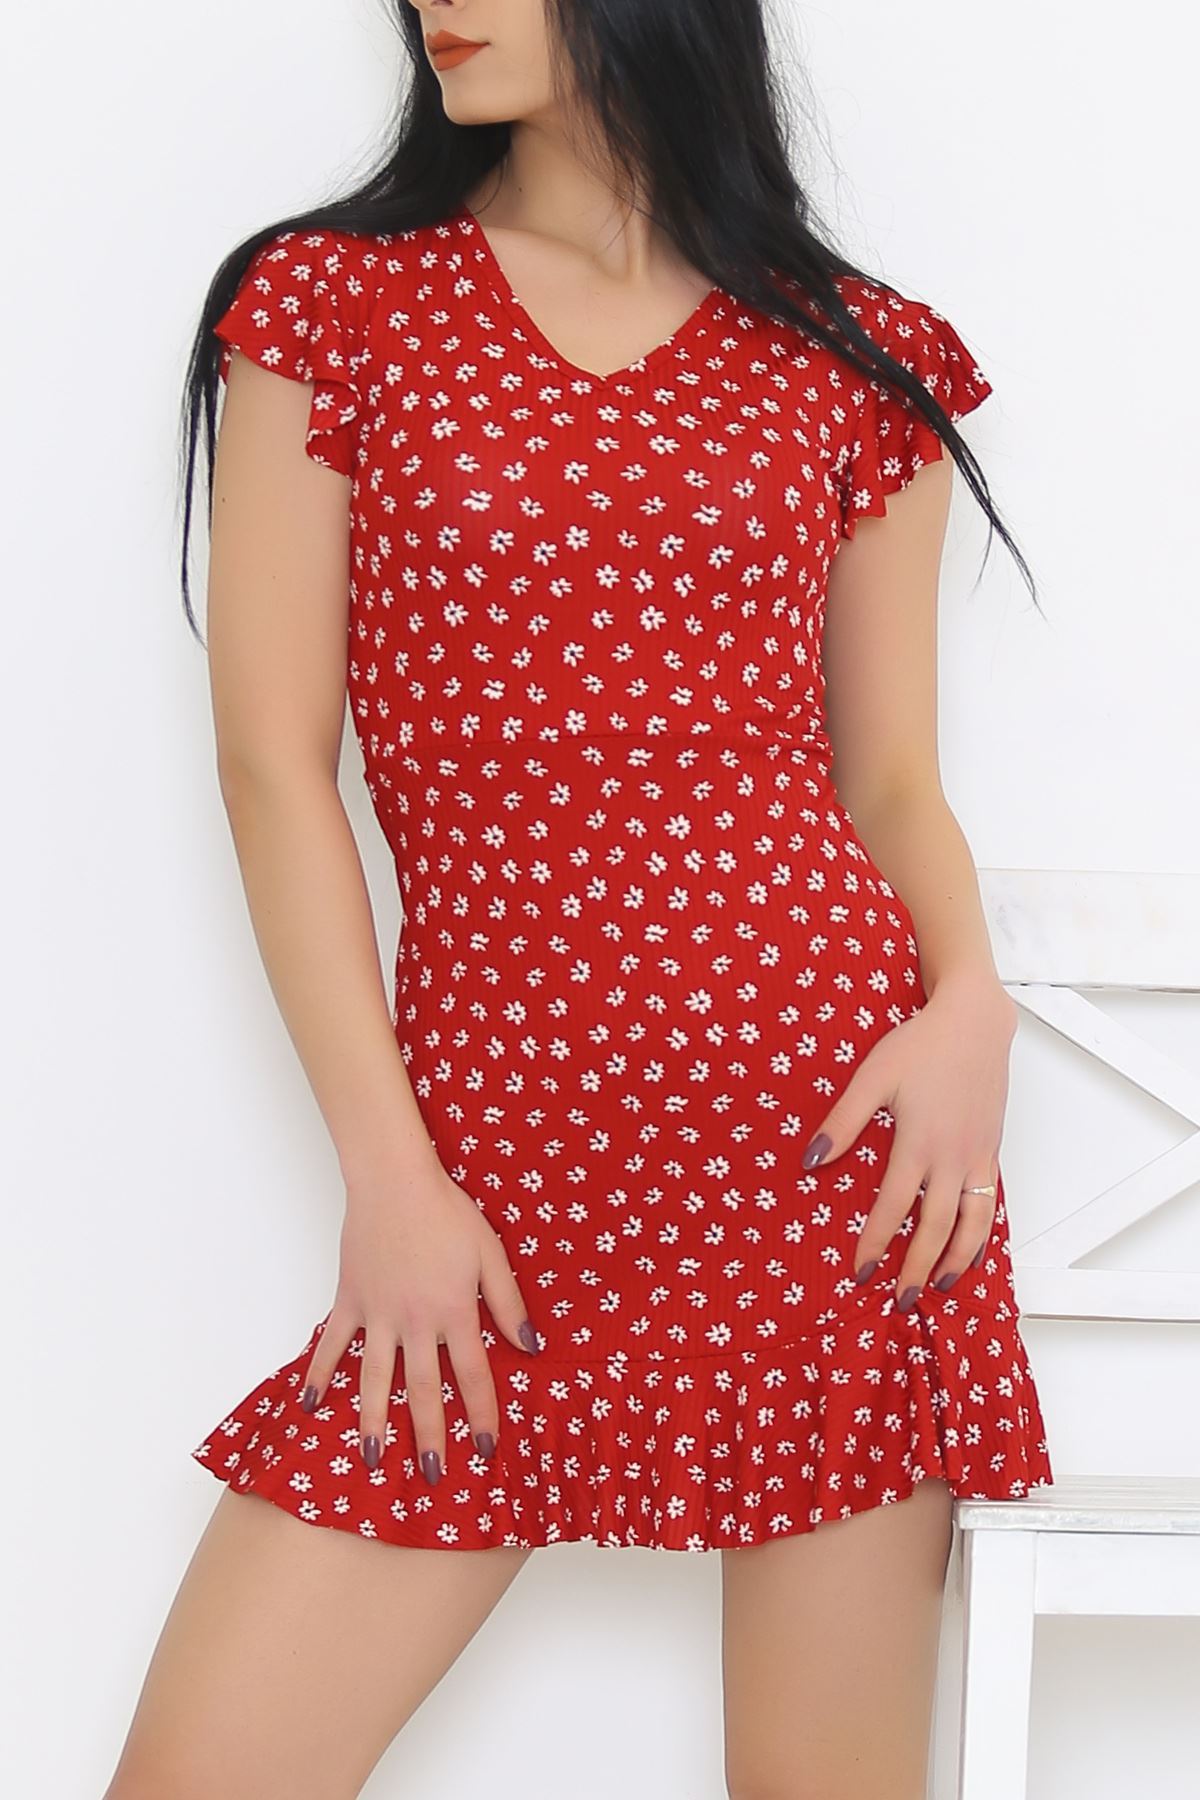 Altı Fırfırlı Elbise Çiçeklikırmızı - 2255.555.